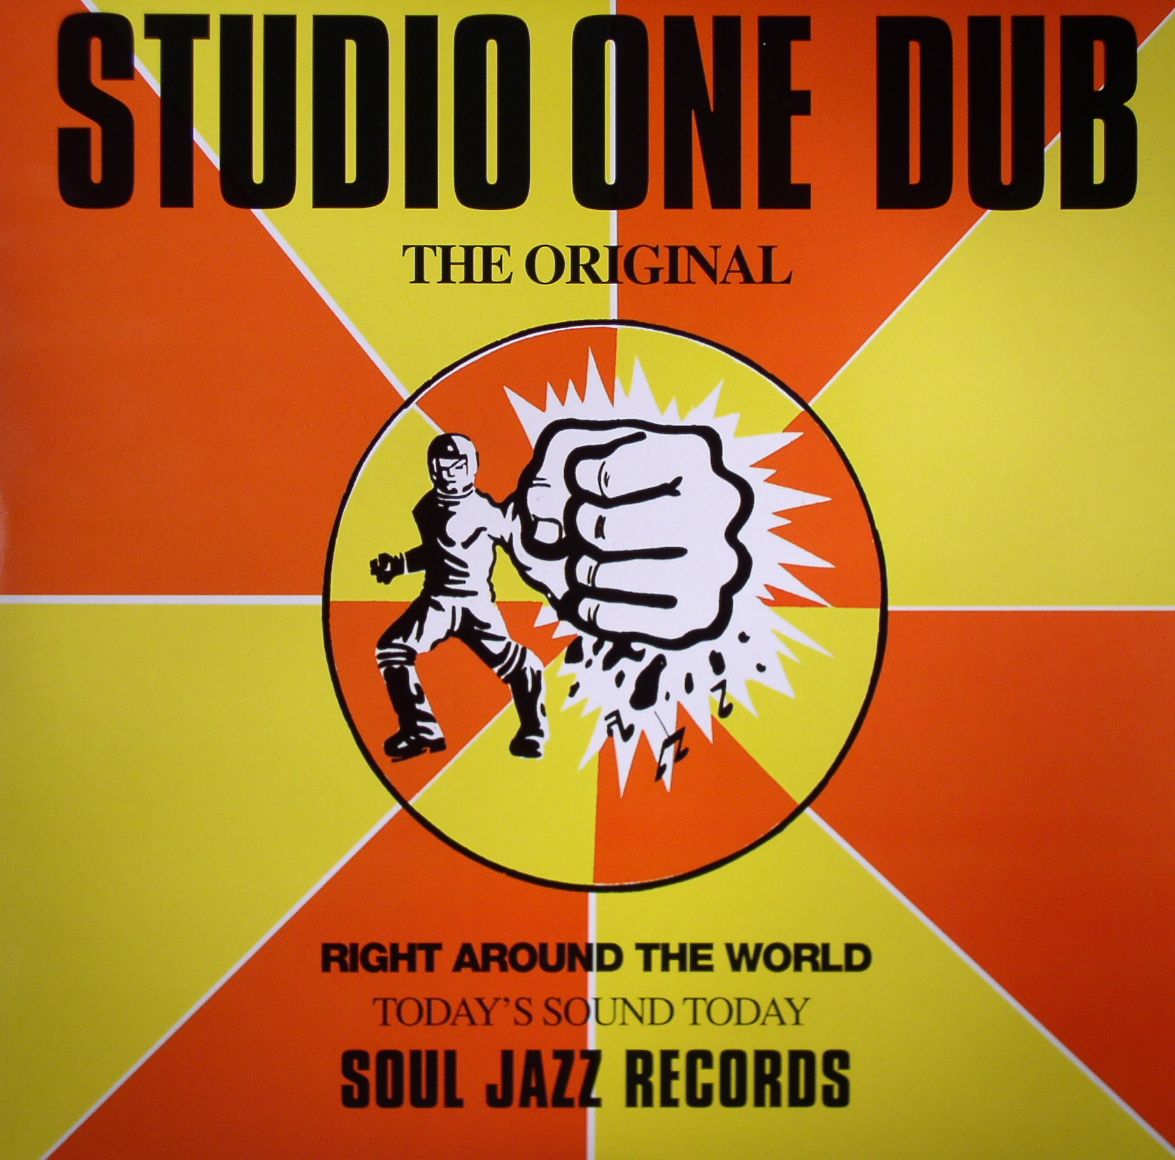 STUDIO ONE DUB - The Original (Coxsone Dodd production)